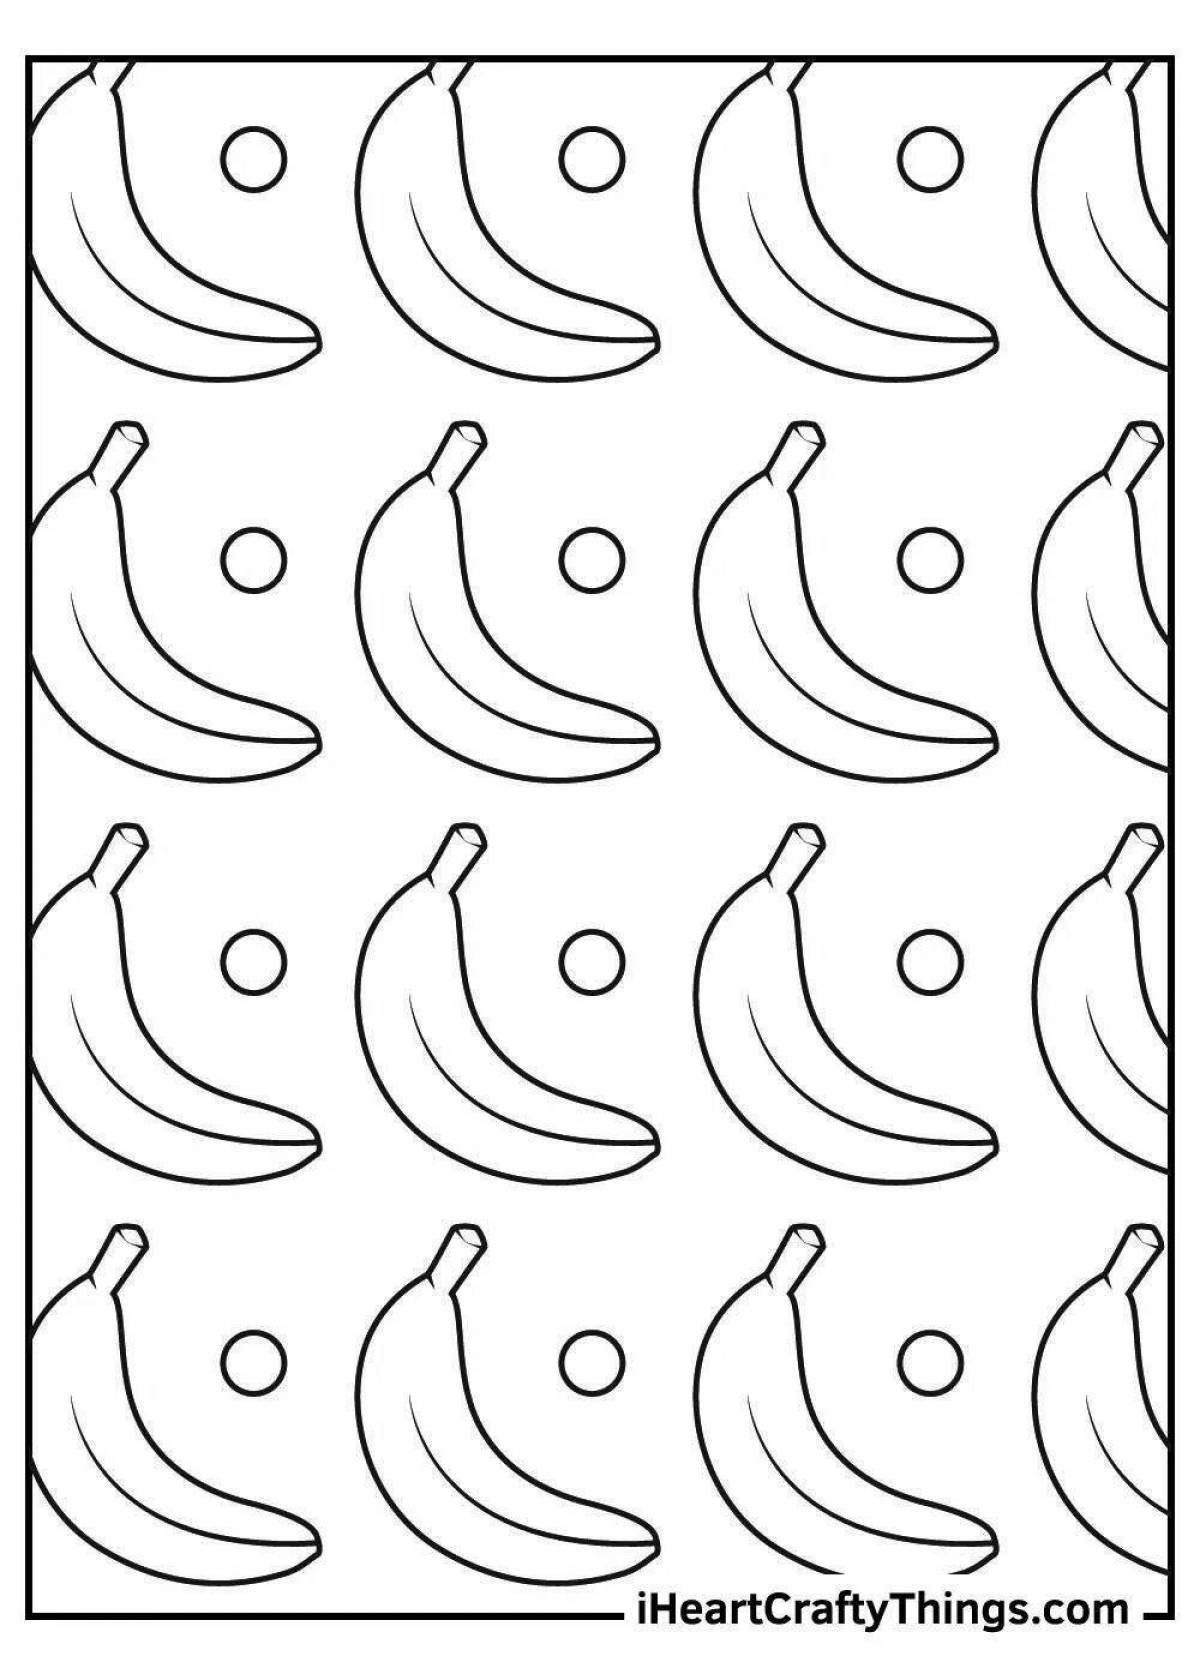 Раскраска Банан Распечатать бесплатно